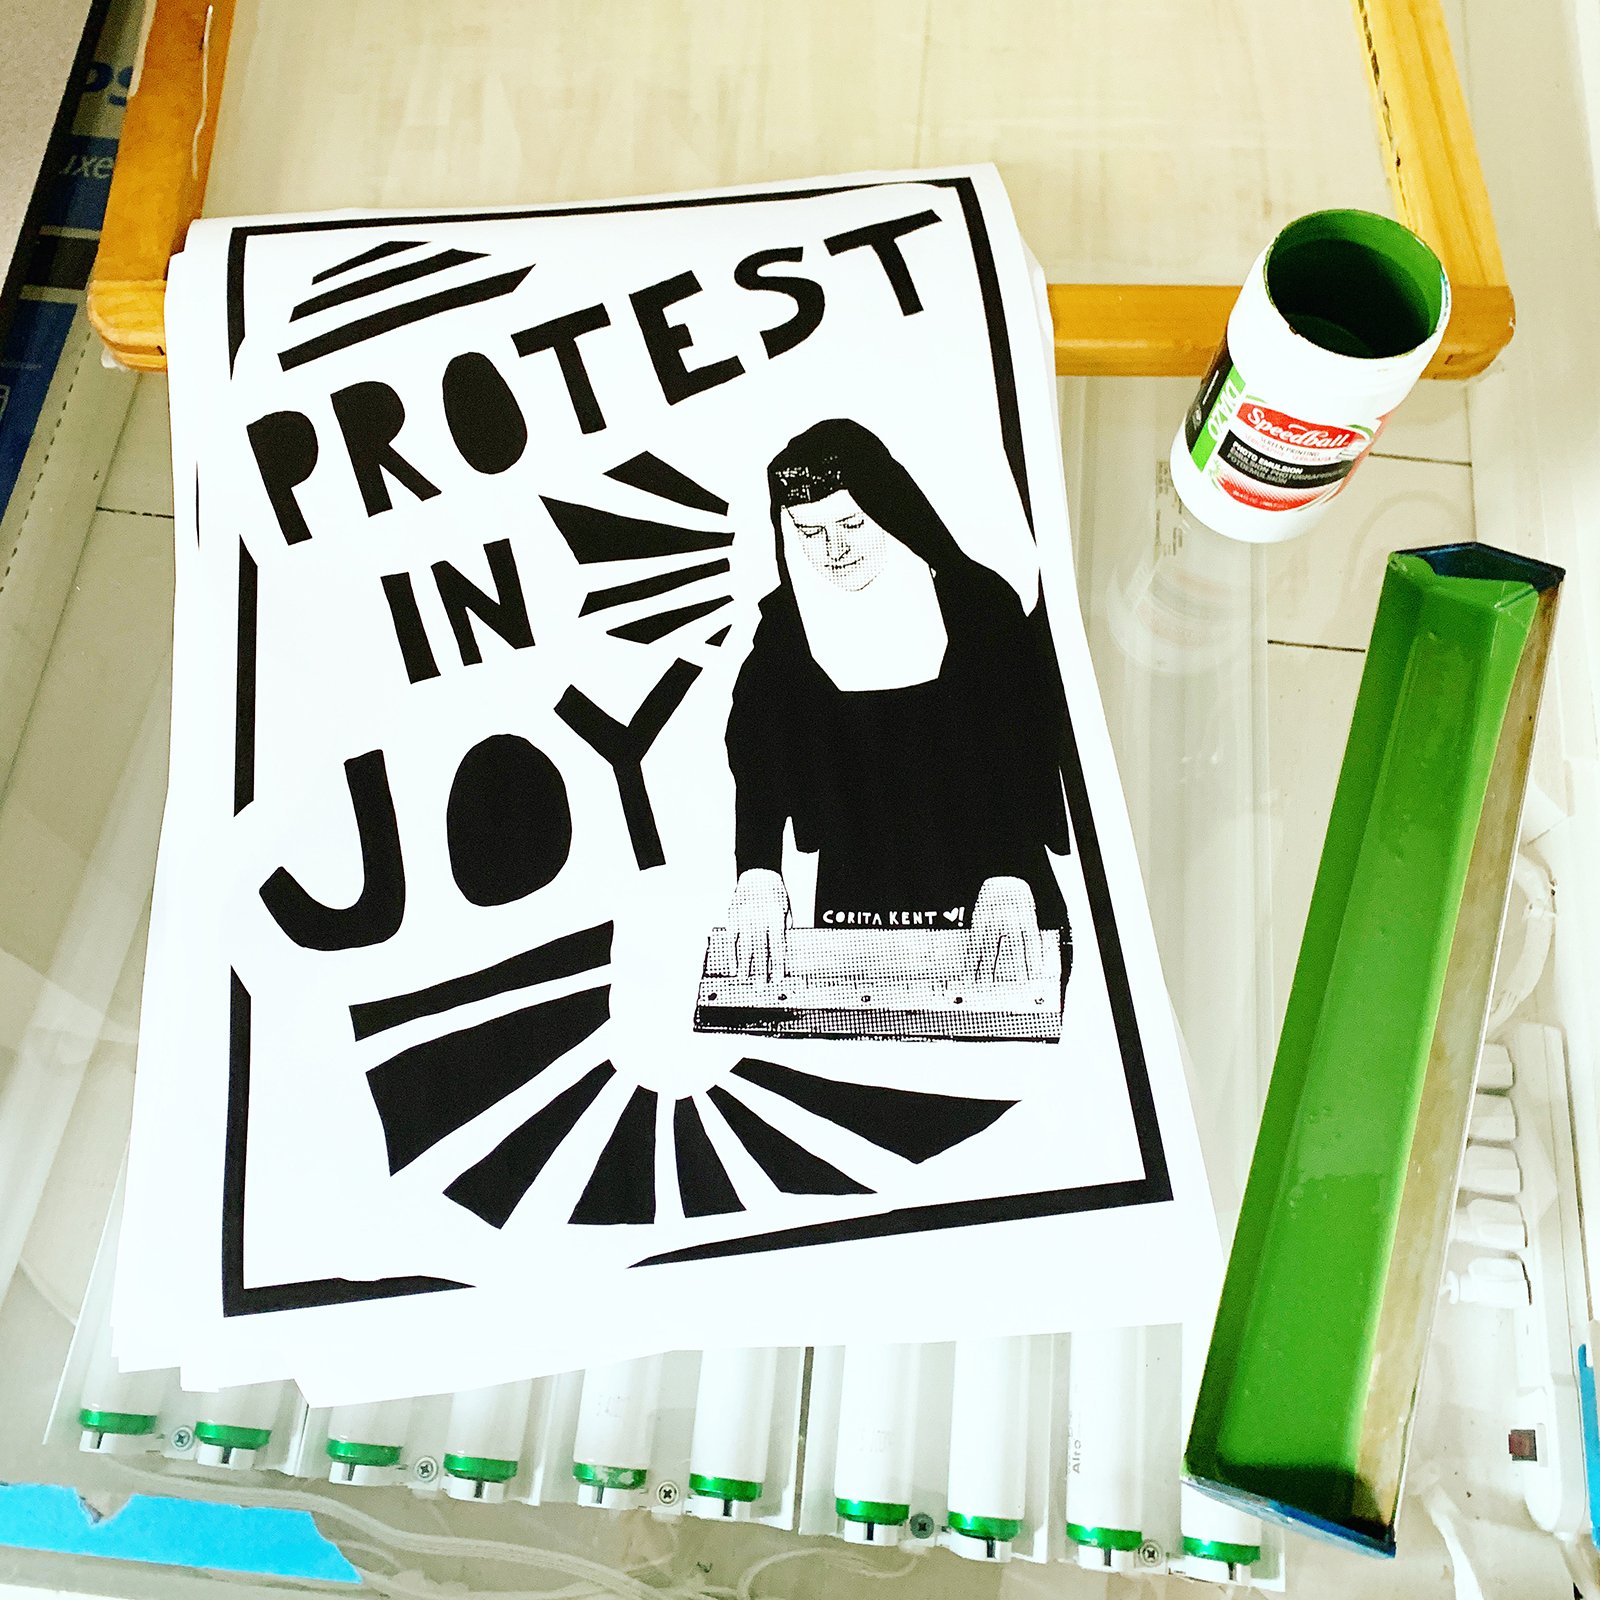 Ape_Bleakney_Corita_Protest_in_Joy_QMDM1862x.JPG